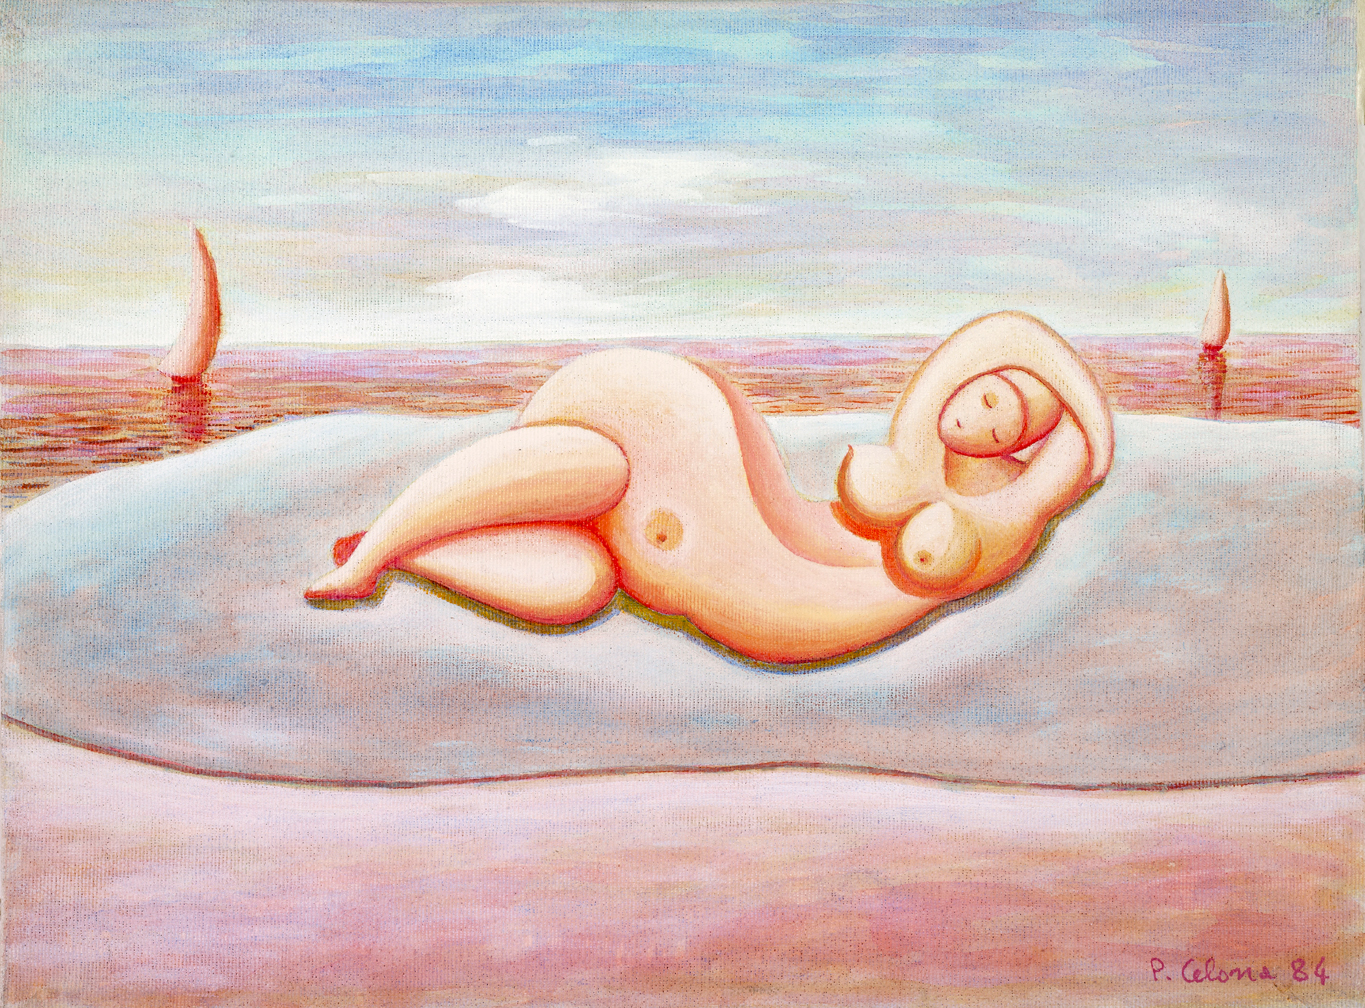 Figura sulla spiaggia, 1984
Olio su tela, 50 x 70 cm
Collezione privata,
F016